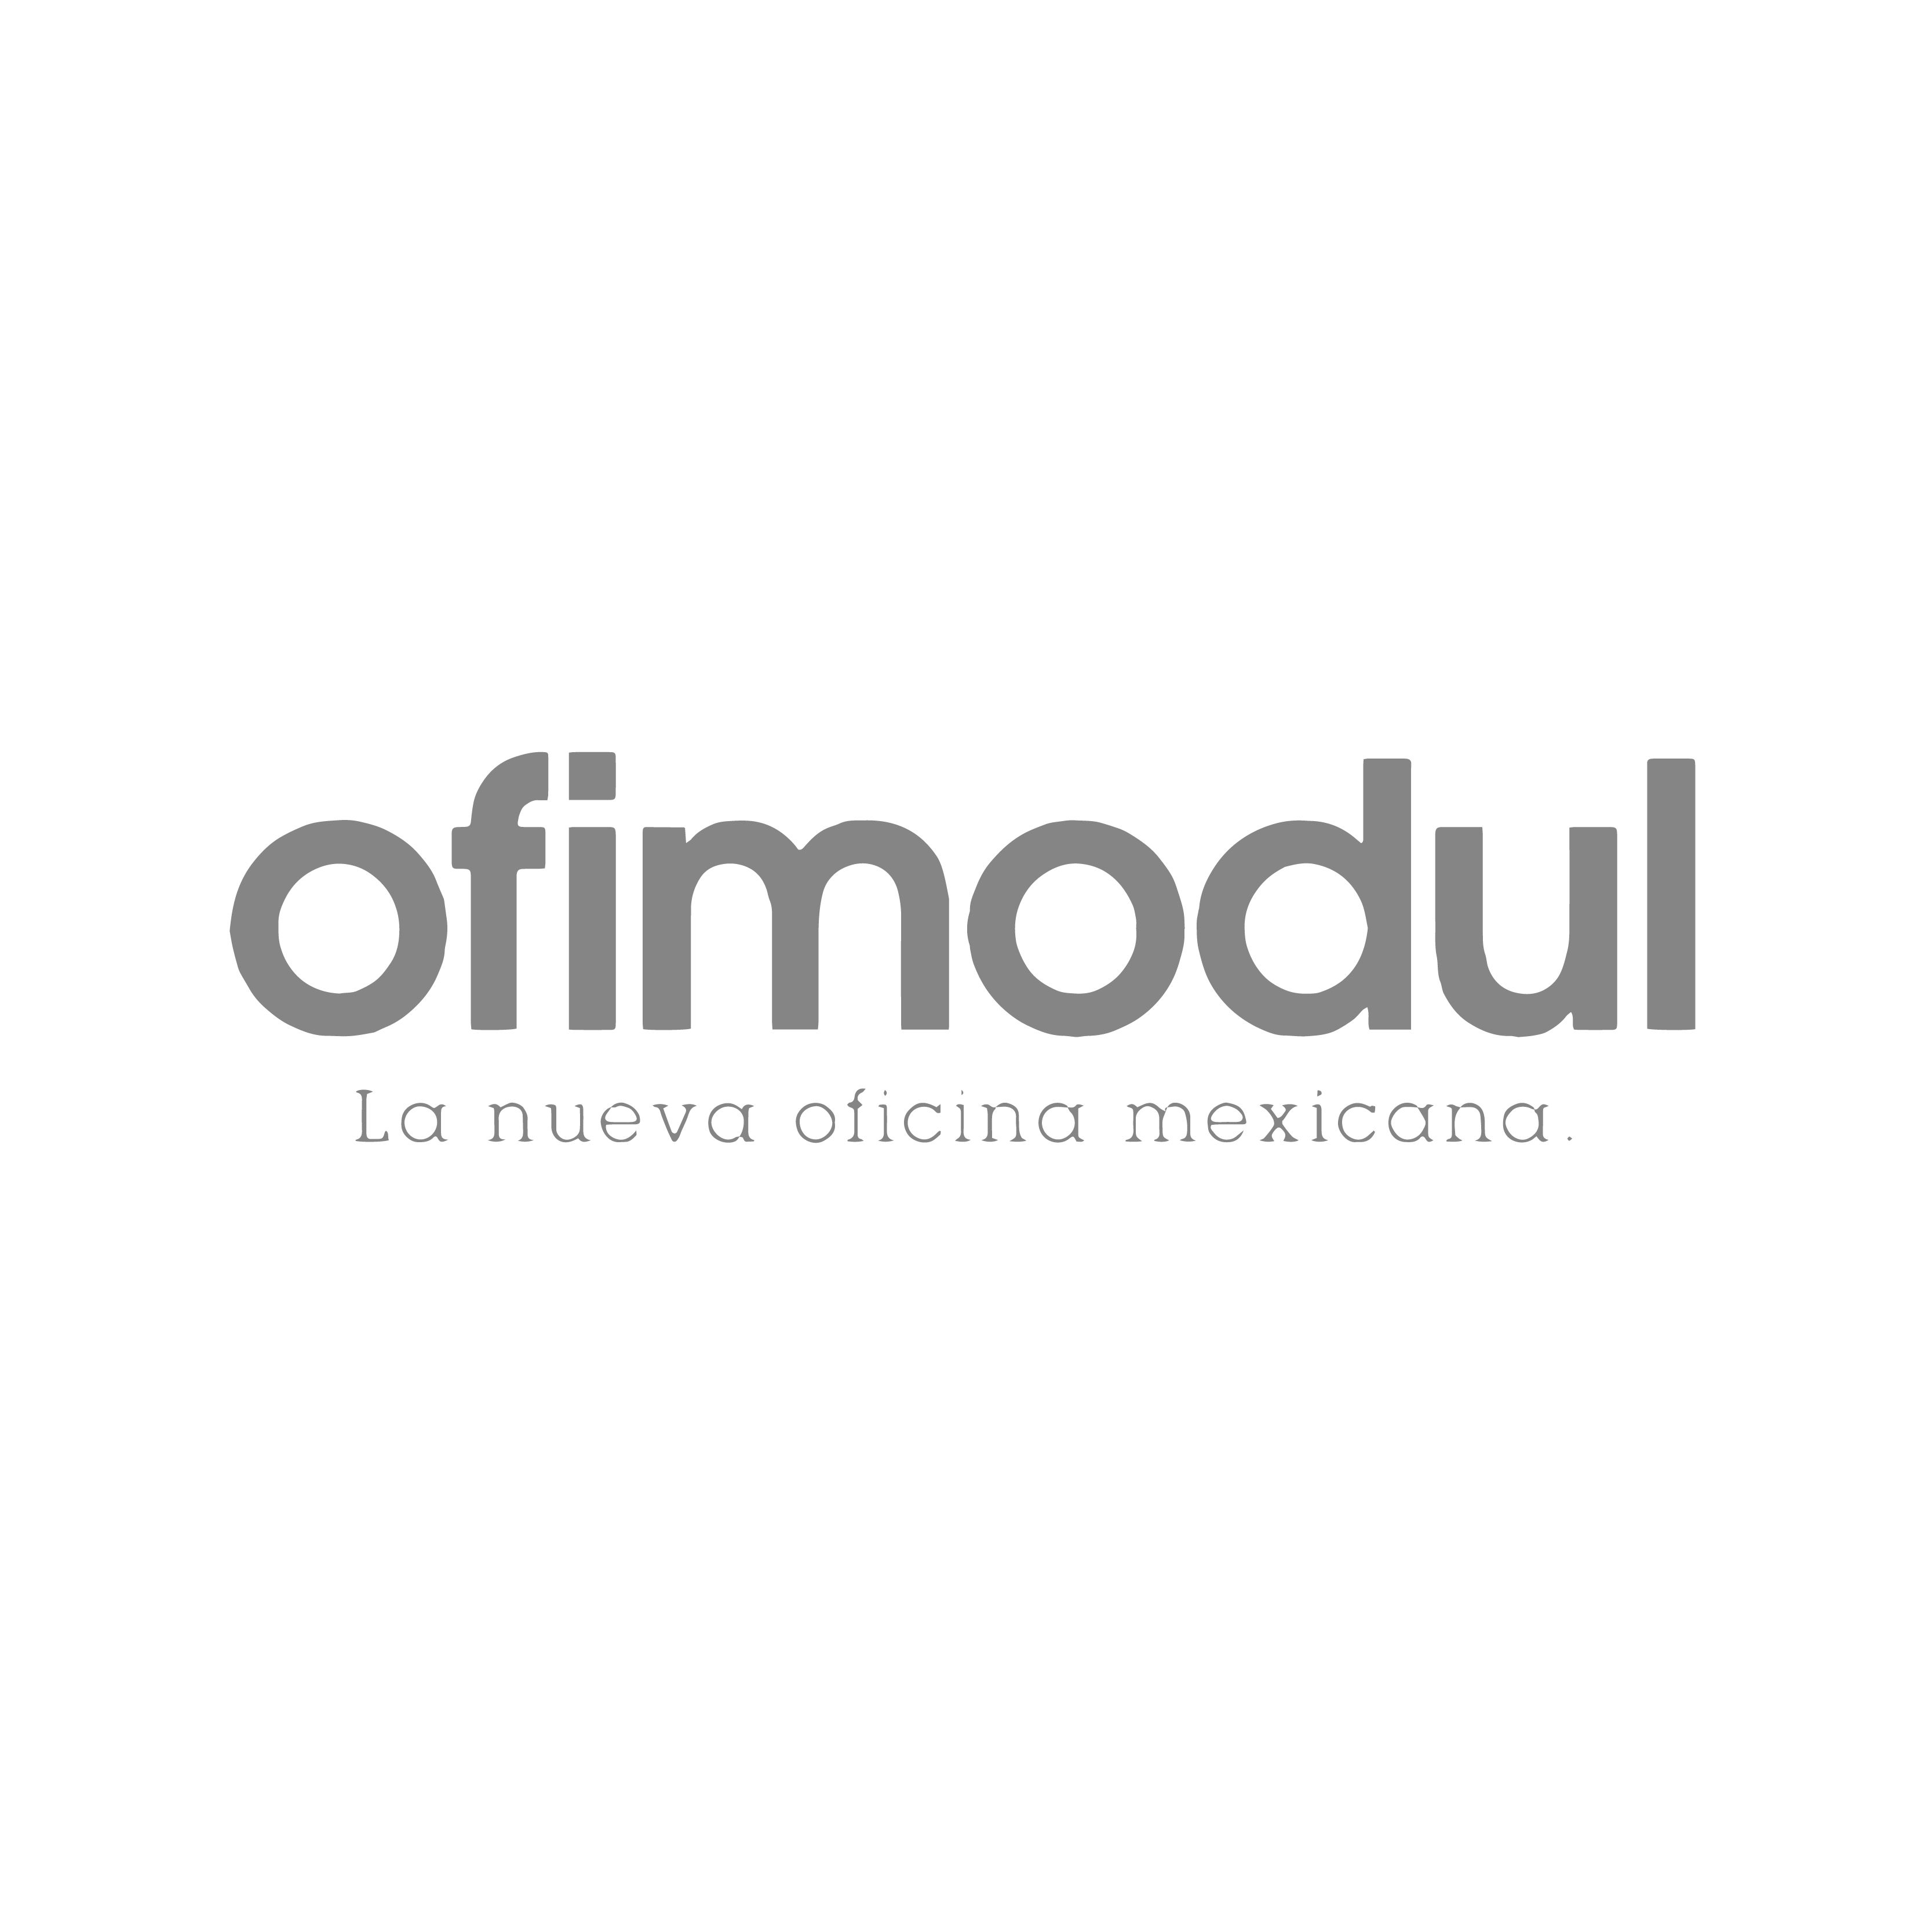 Logos jean agencia de publicidad y marketing Ofimodul